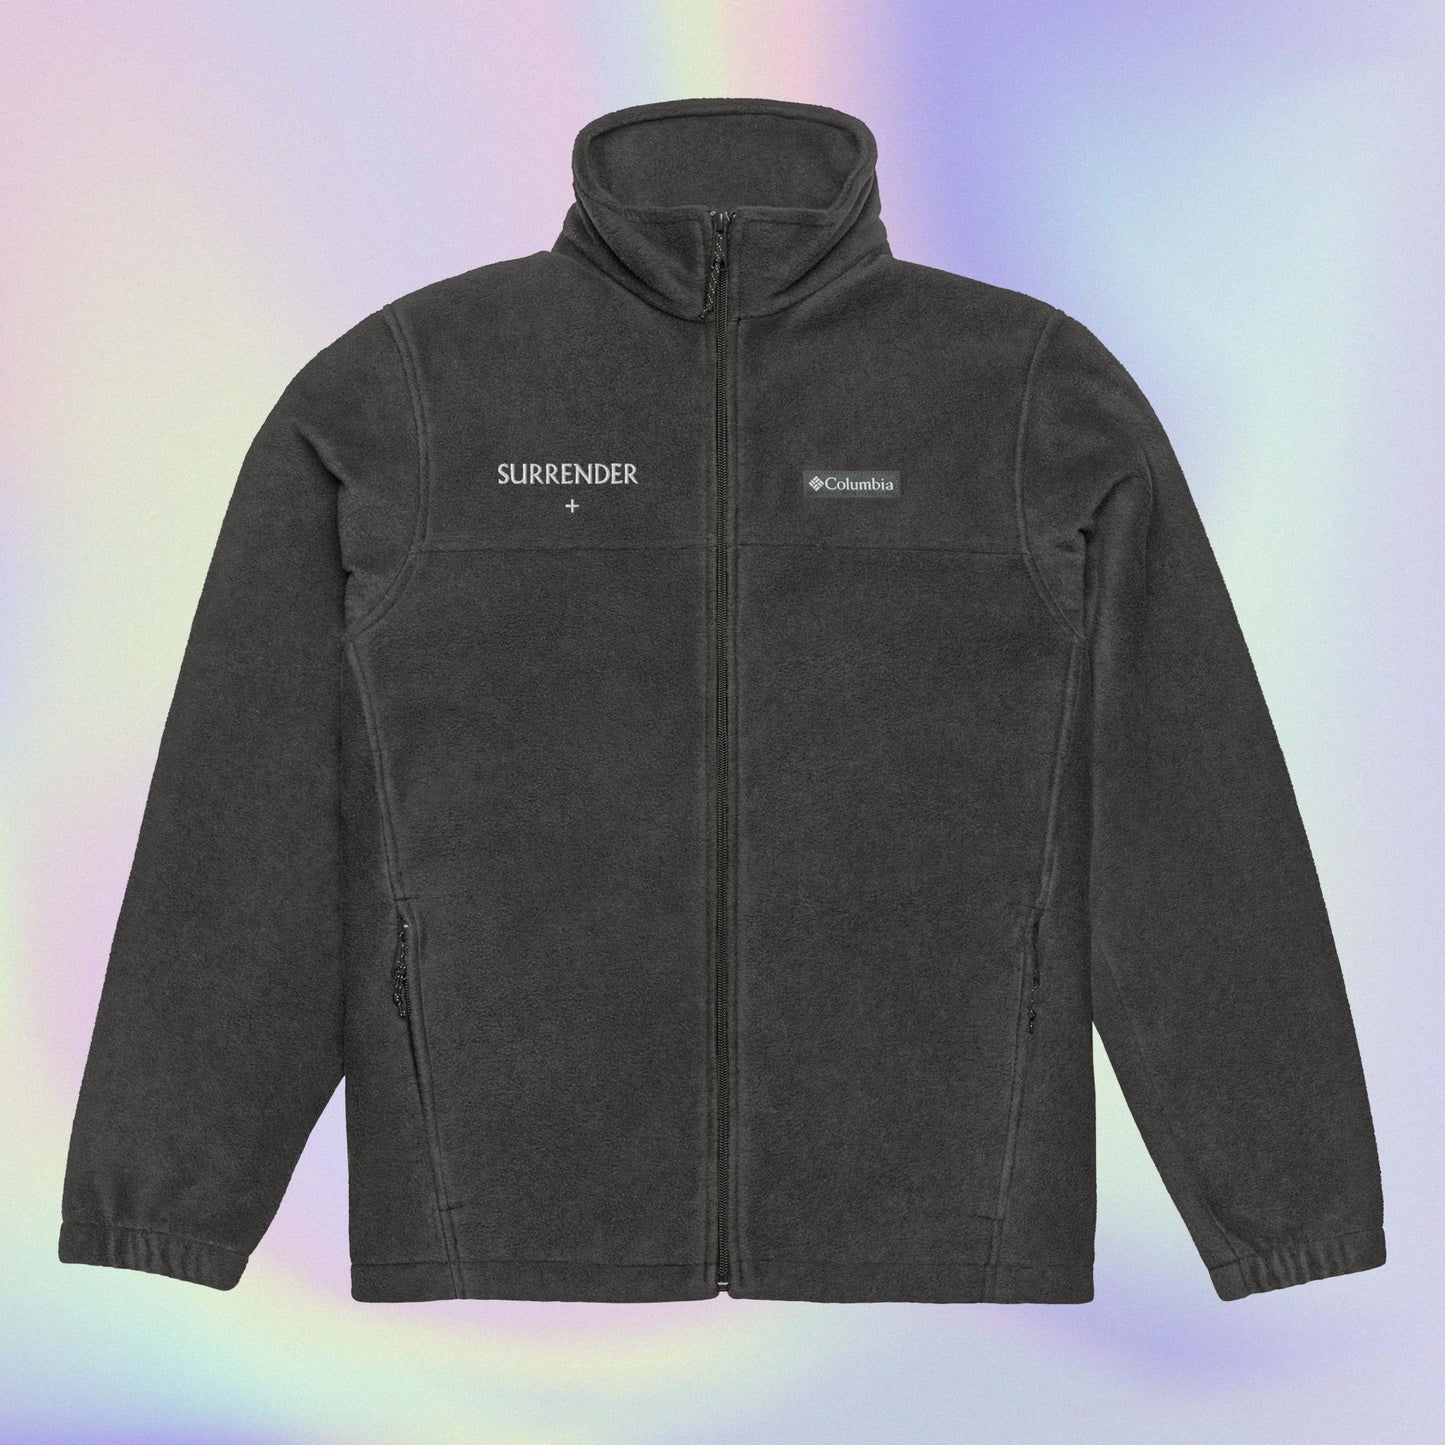 "SURRENDER +" Unisex Columbia fleece jacket